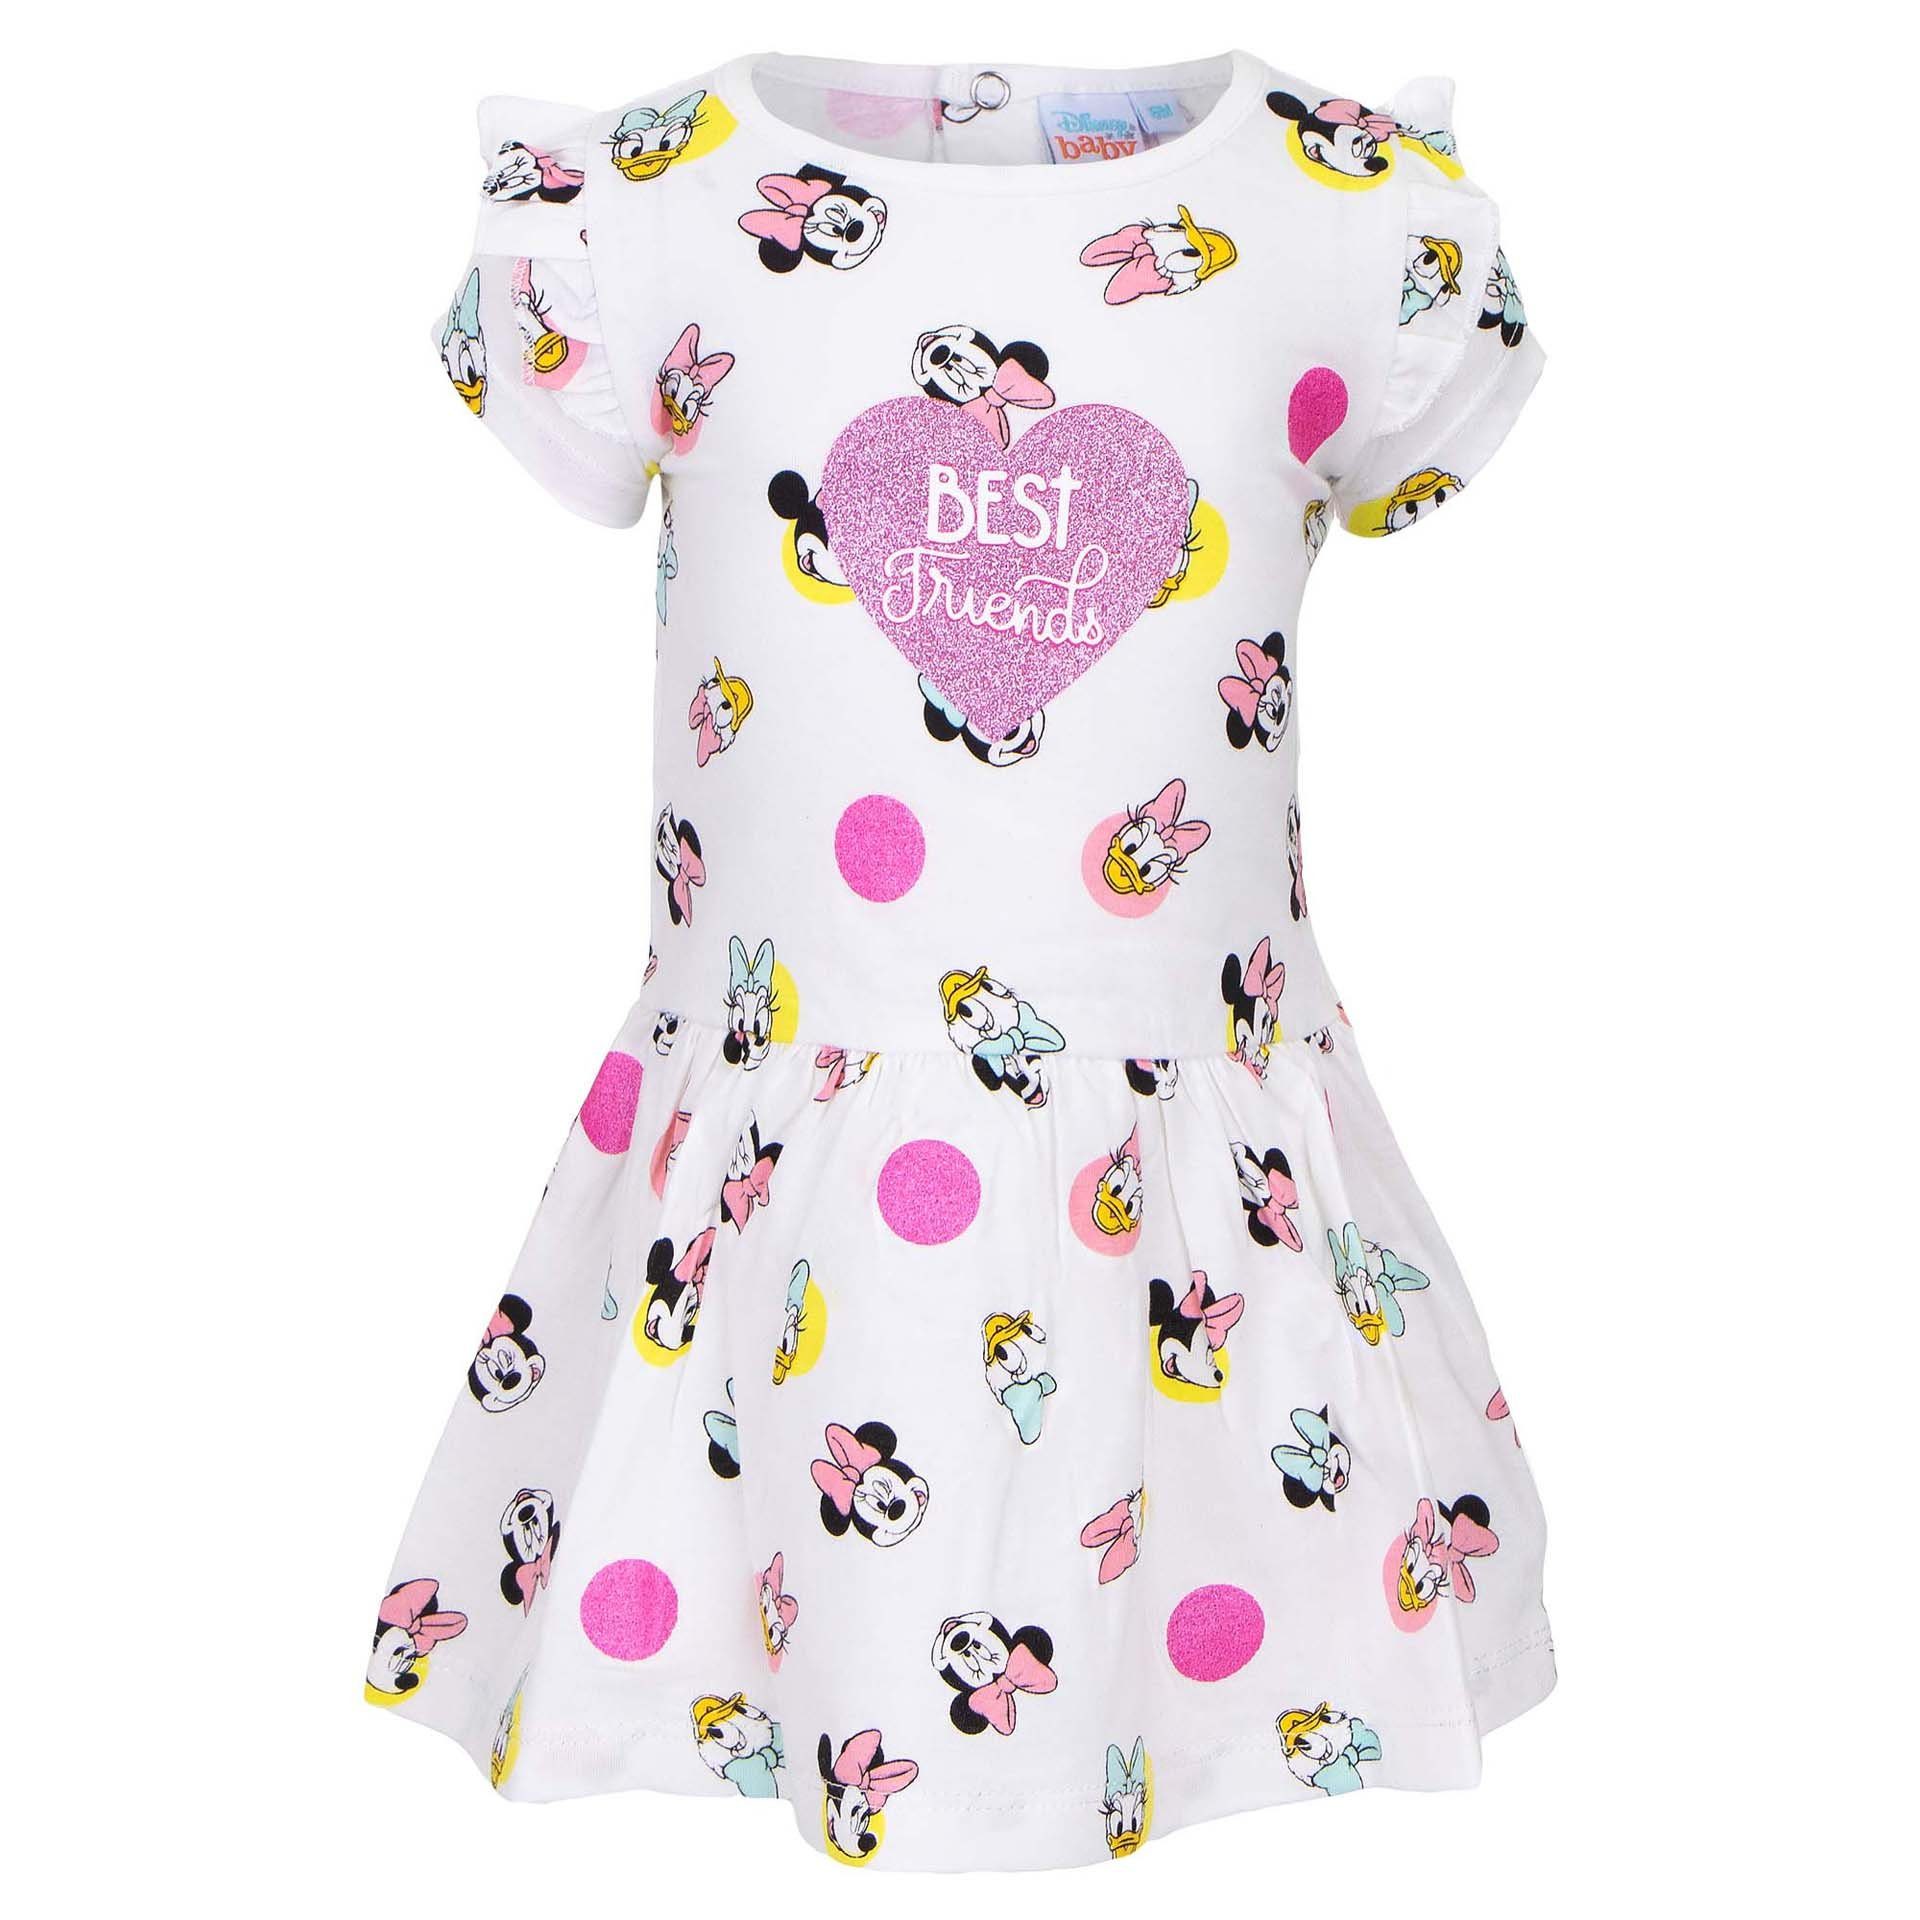 Kinder Kleider Disney Baby Sommerkleid Disney Minnie Mouse Maus & Daisy Duck Ente Kurzarm Kleid Rosa Weiß für Babys bis 6 Monate